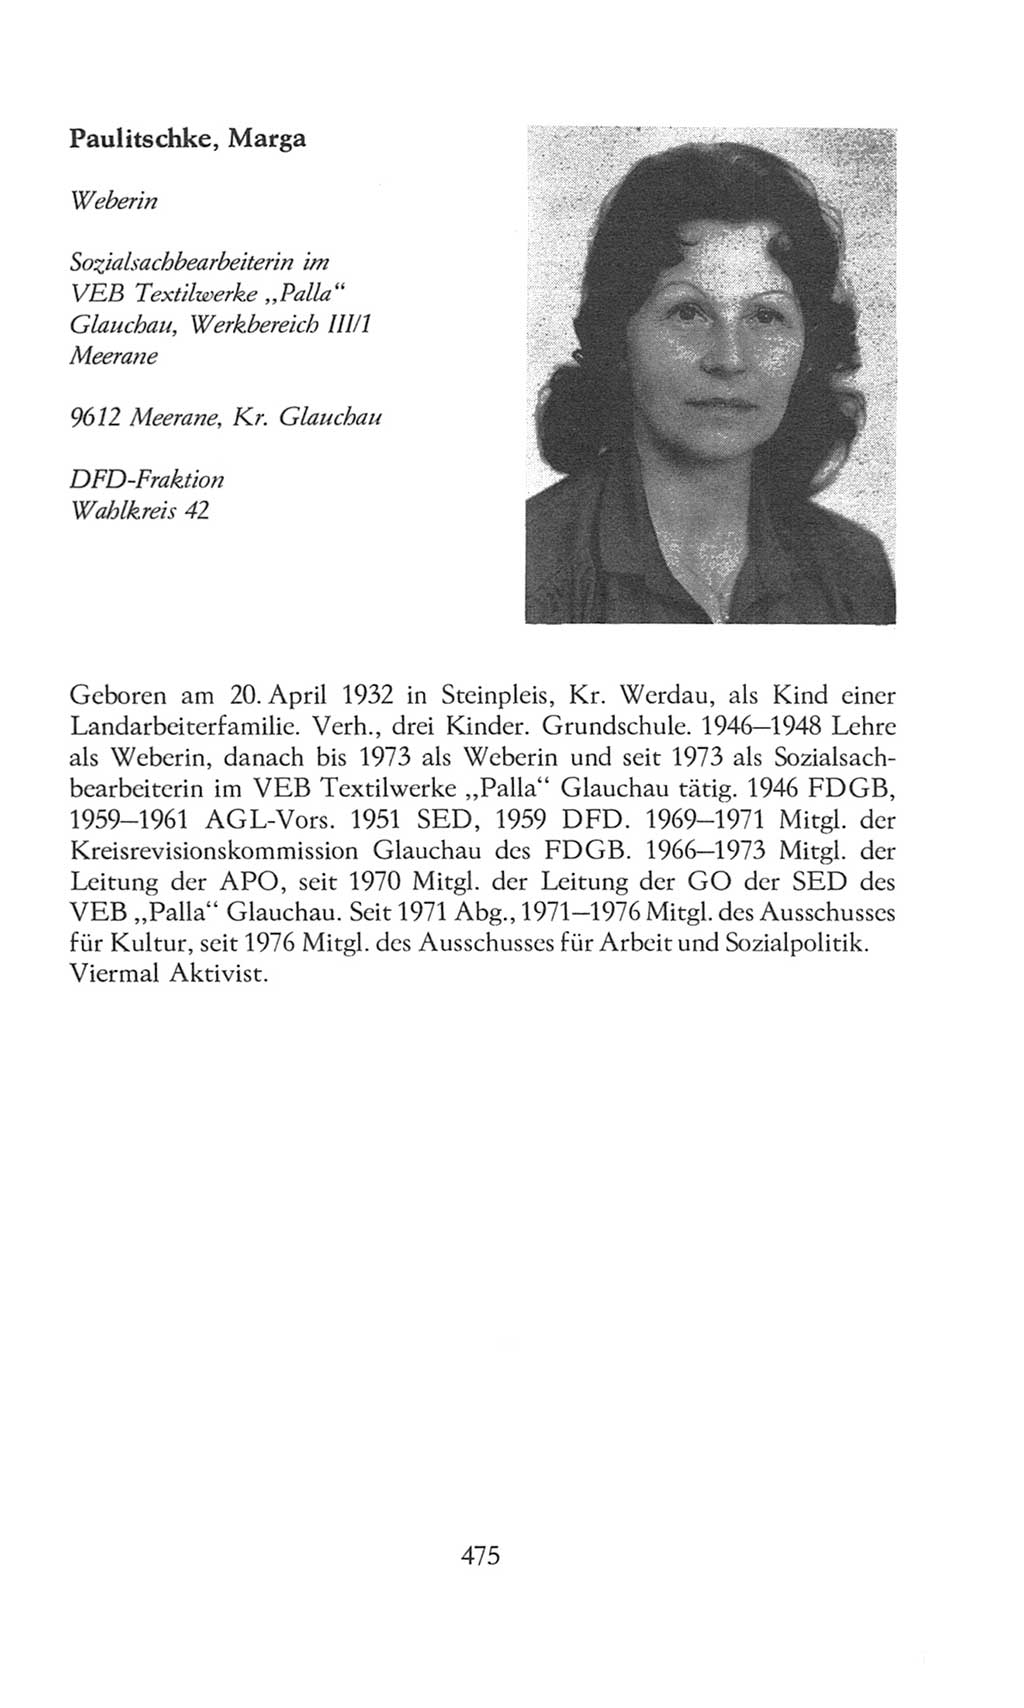 Volkskammer (VK) der Deutschen Demokratischen Republik (DDR), 8. Wahlperiode 1981-1986, Seite 475 (VK. DDR 8. WP. 1981-1986, S. 475)